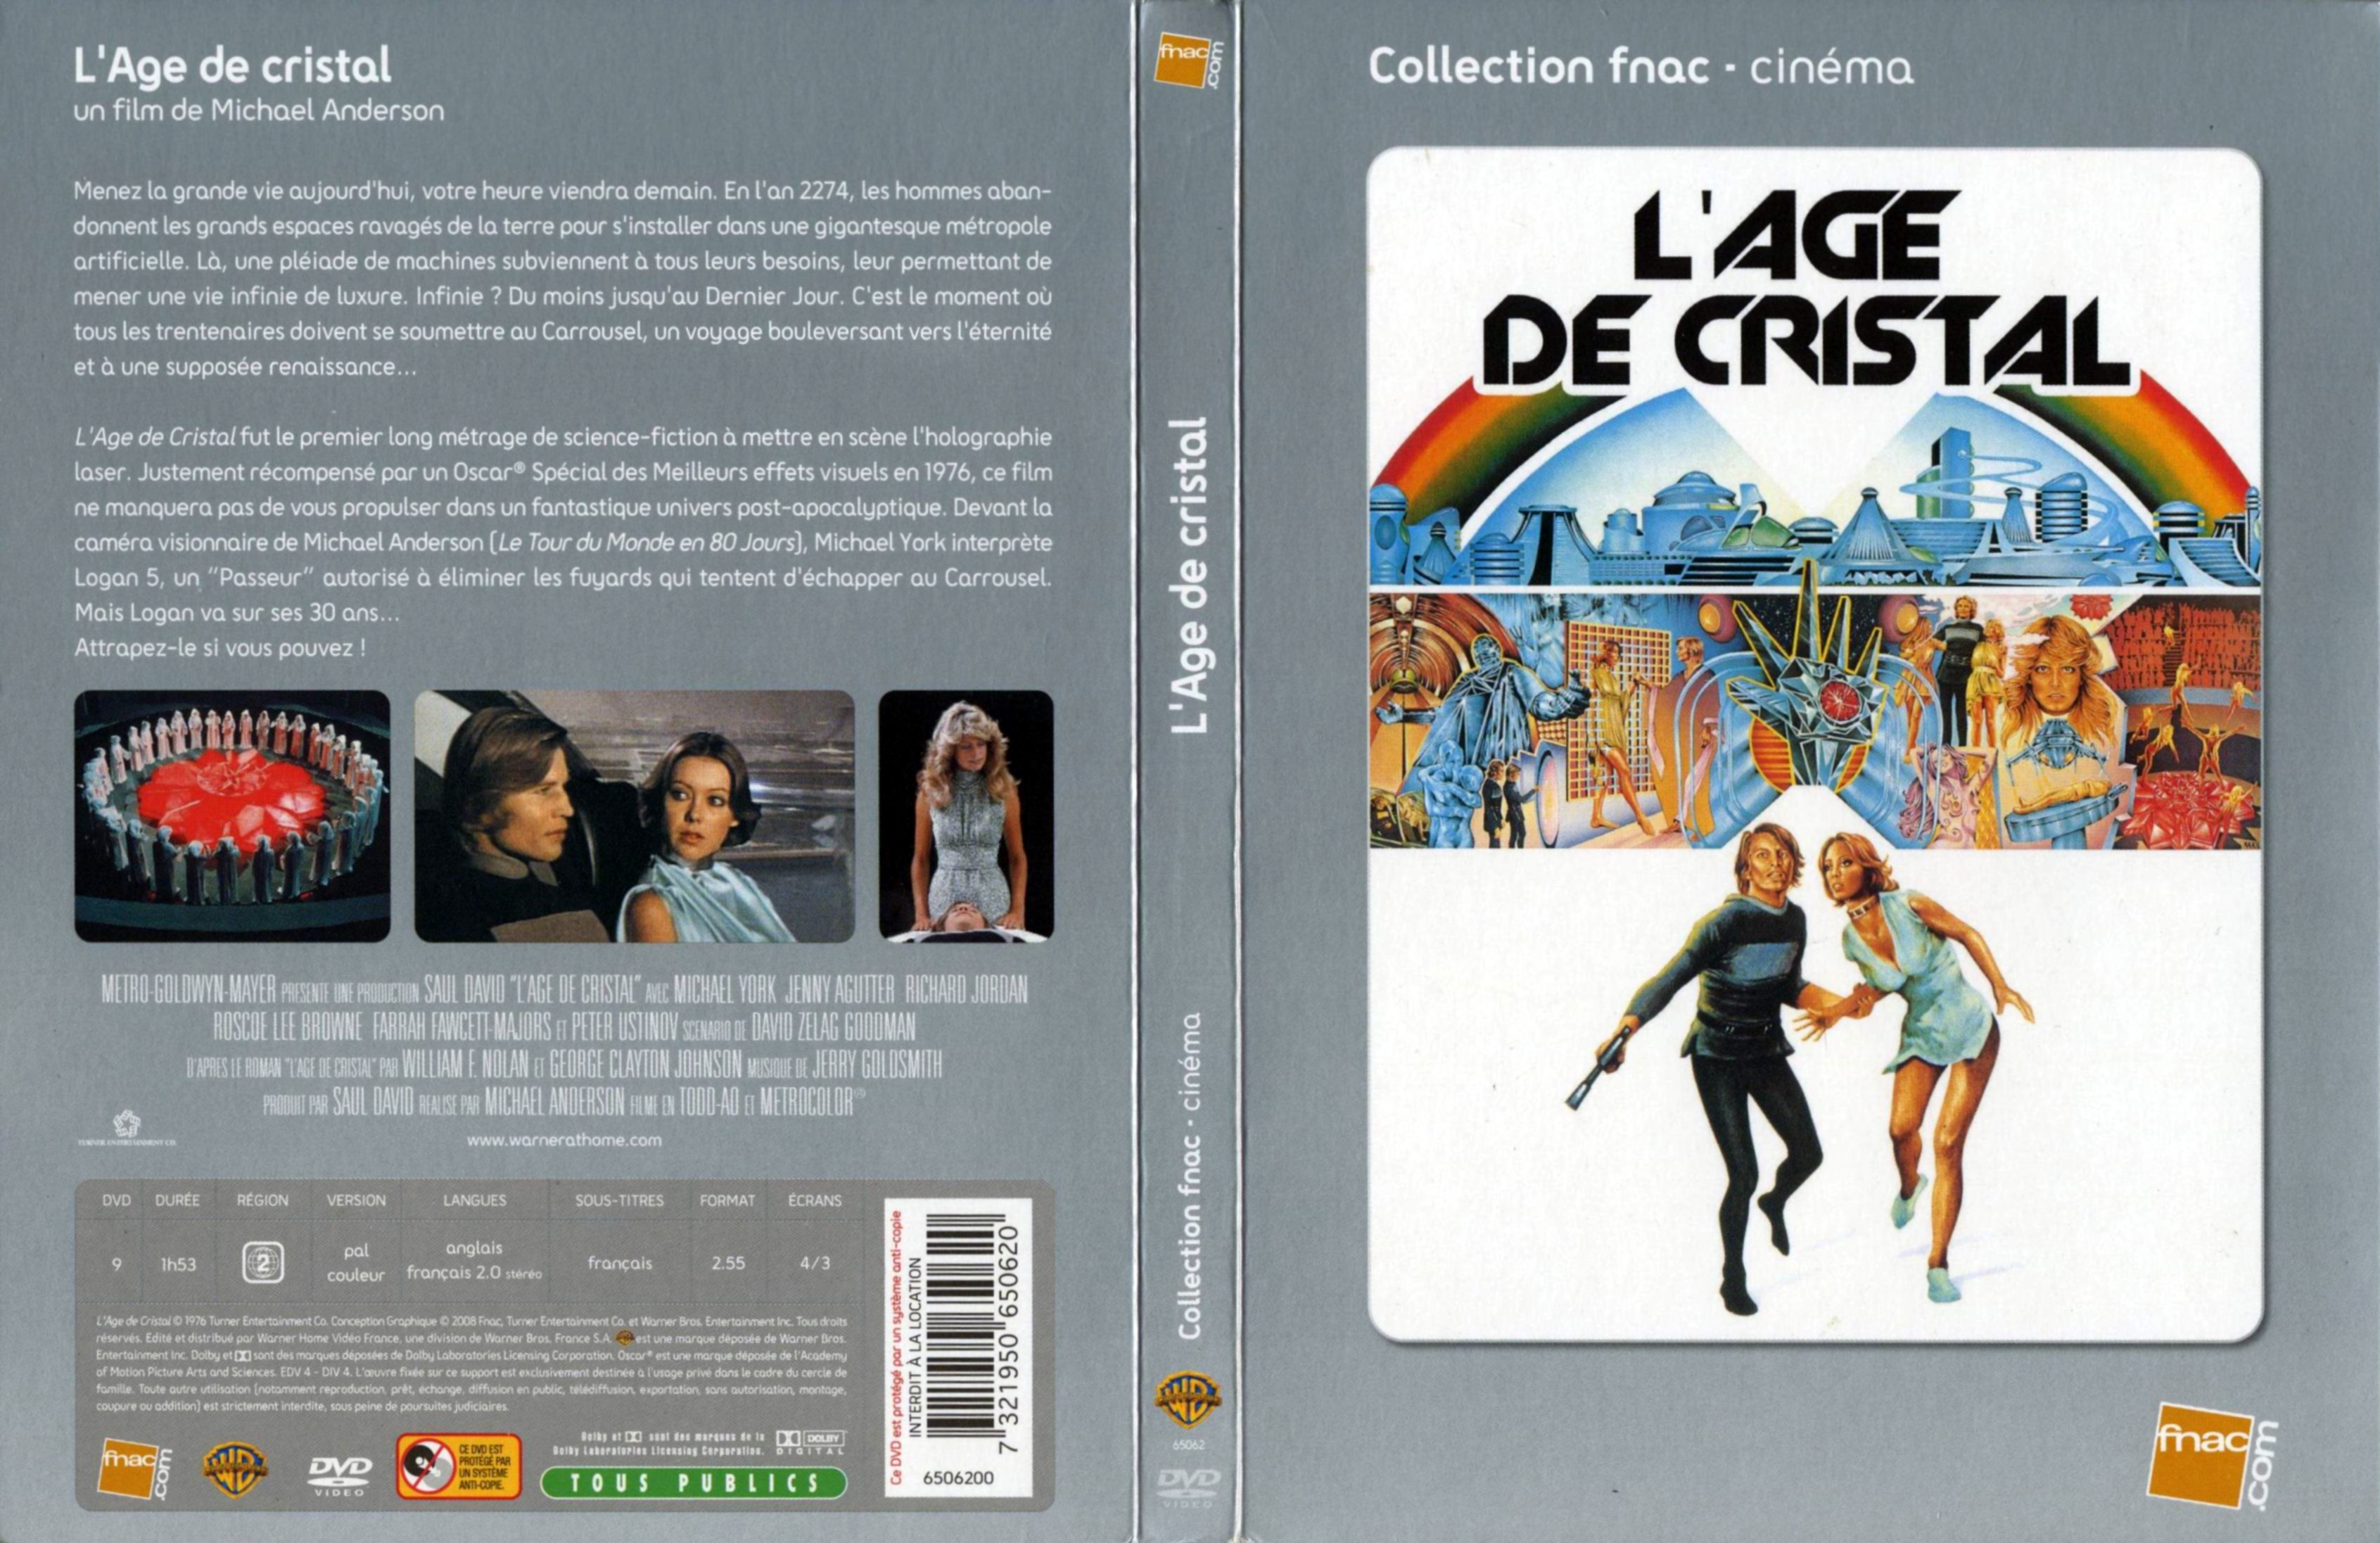 Jaquette DVD de L'age de cristal - Cinéma Passion